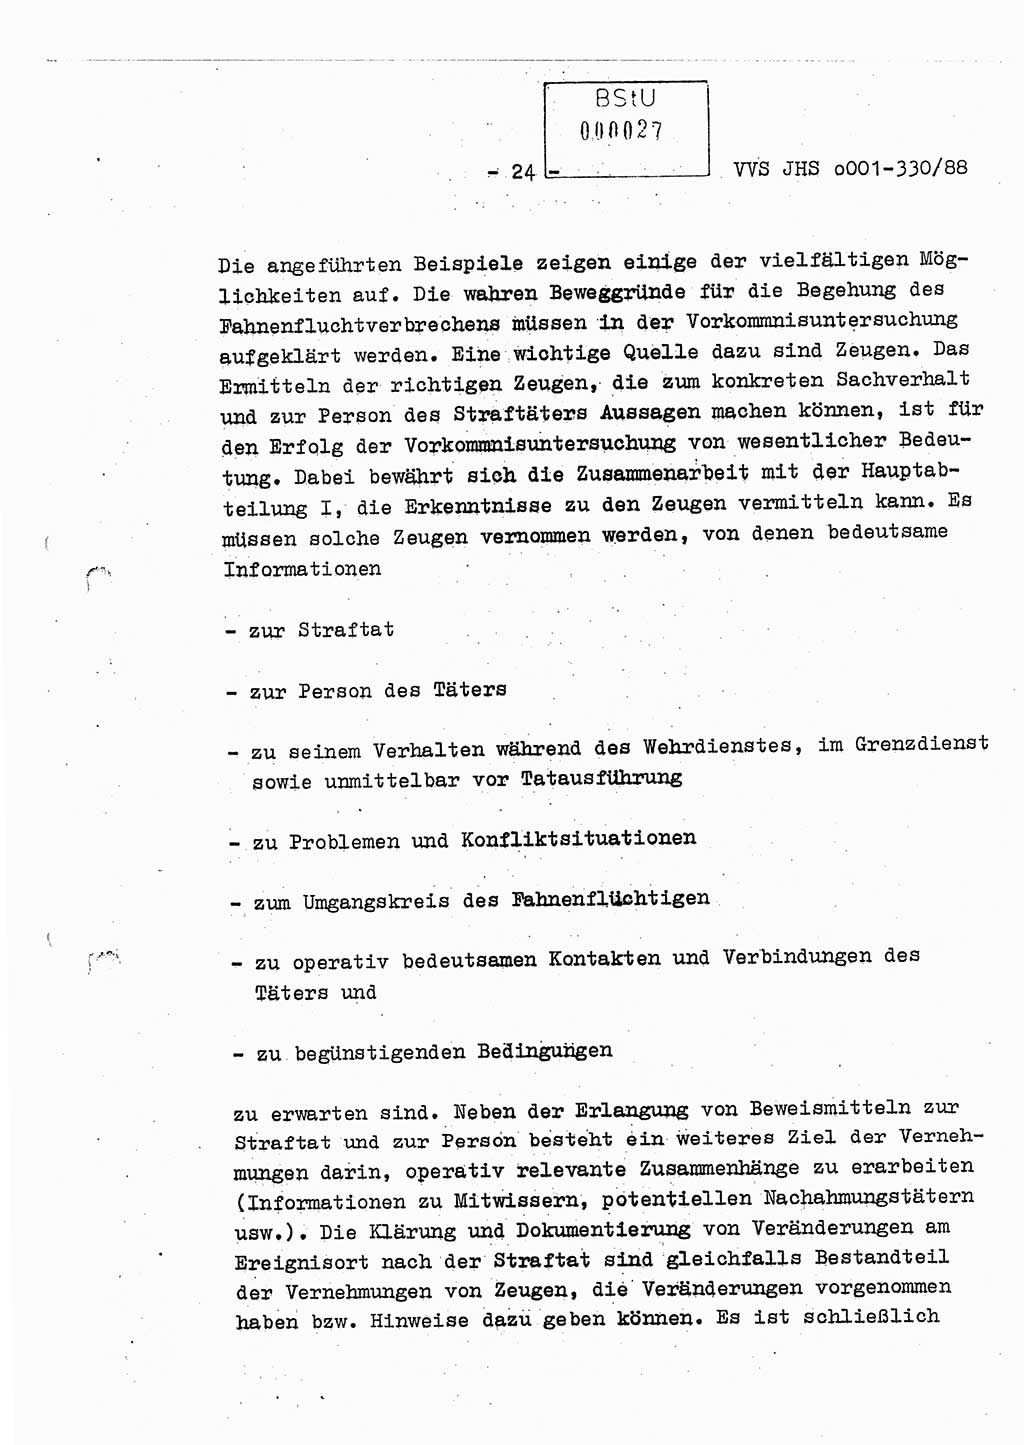 Diplomarbeit Offiziersschüler Thomas Mühle (HA Ⅸ/6), Ministerium für Staatssicherheit (MfS) [Deutsche Demokratische Republik (DDR)], Juristische Hochschule (JHS), Vertrauliche Verschlußsache (VVS) o001-330/88, Potsdam 1988, Seite 24 (Dipl.-Arb. MfS DDR JHS VVS o001-330/88 1988, S. 24)